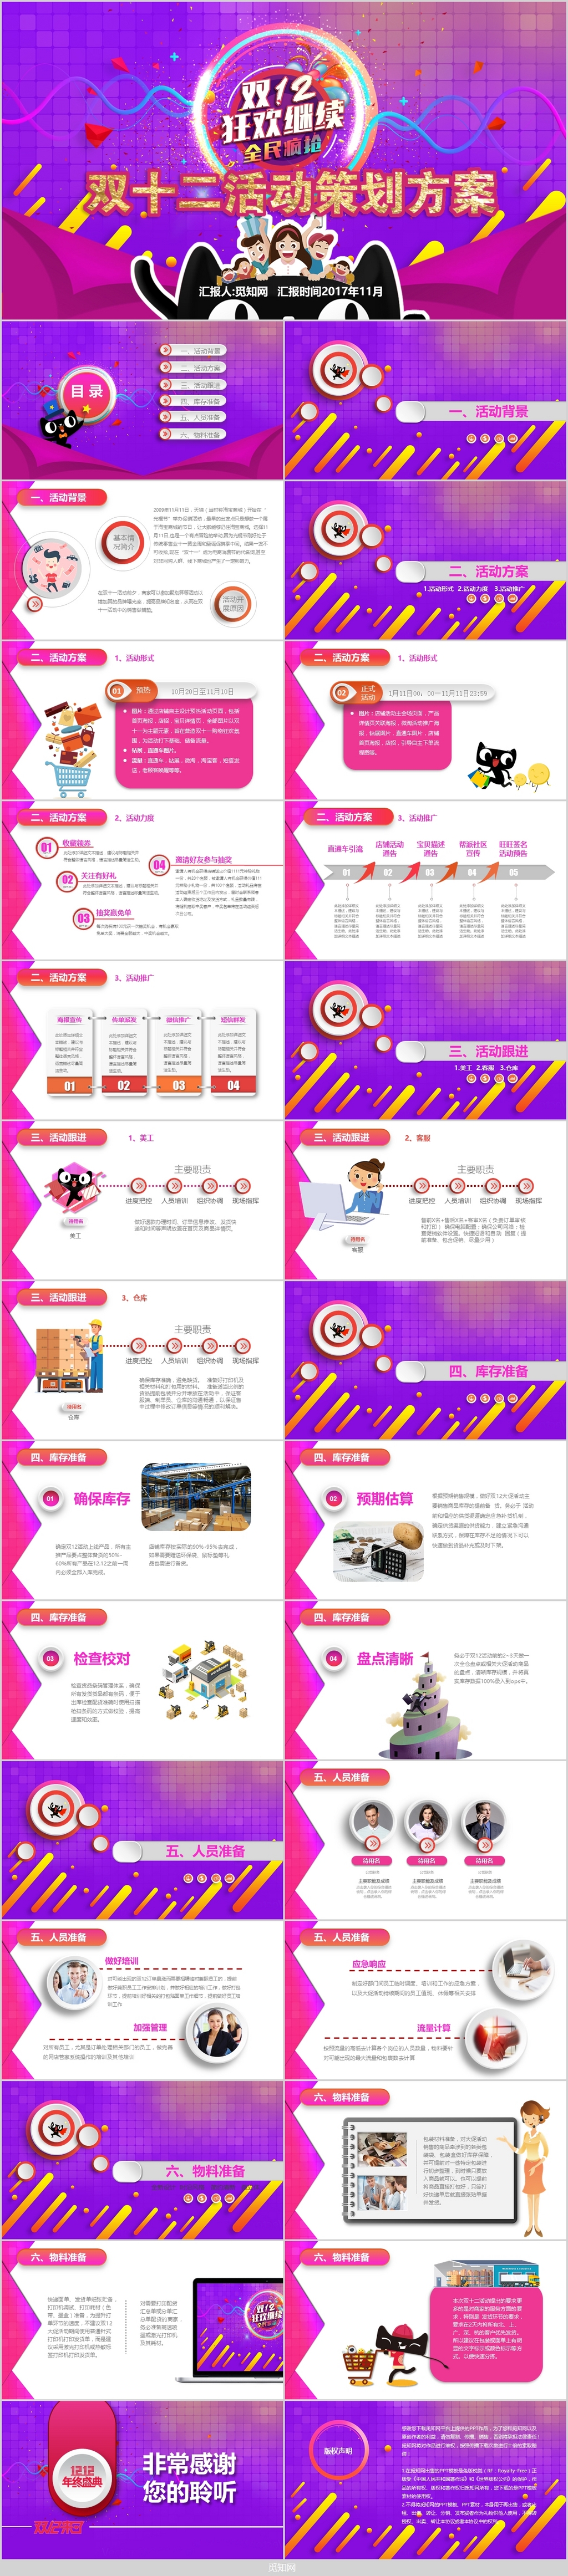 淘宝电商营销双十二购物节活动策划PPT模板